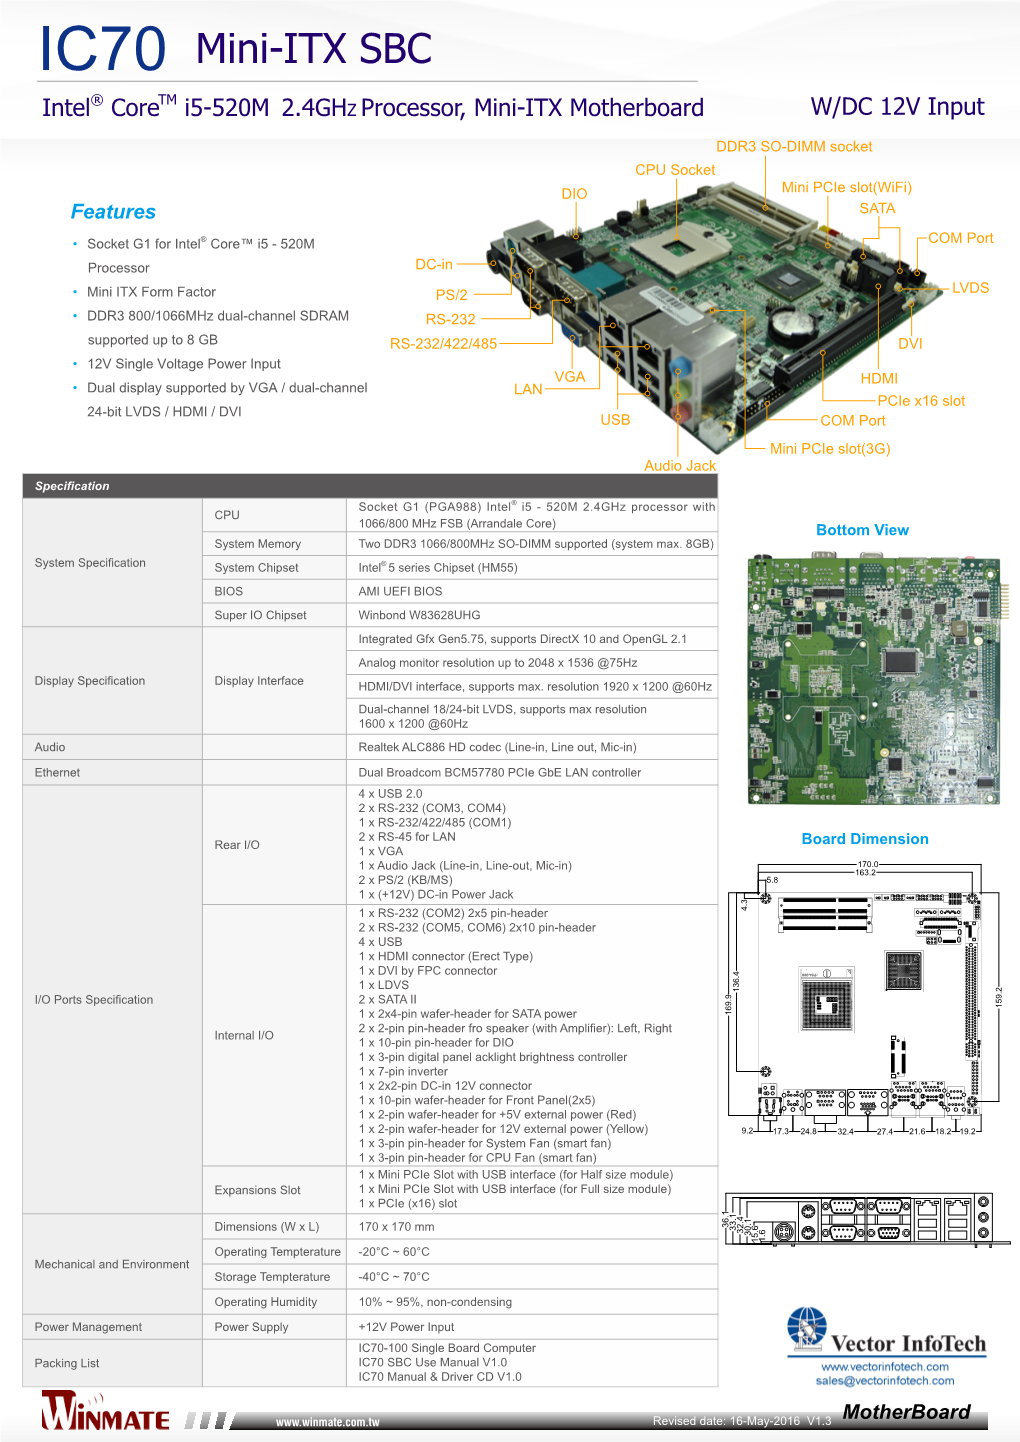 IC70 Mini-ITX SBC ® TM Intel Core I5-520M 2.4Ghz Processor, Mini-ITX Motherboard W/DC 12V Input